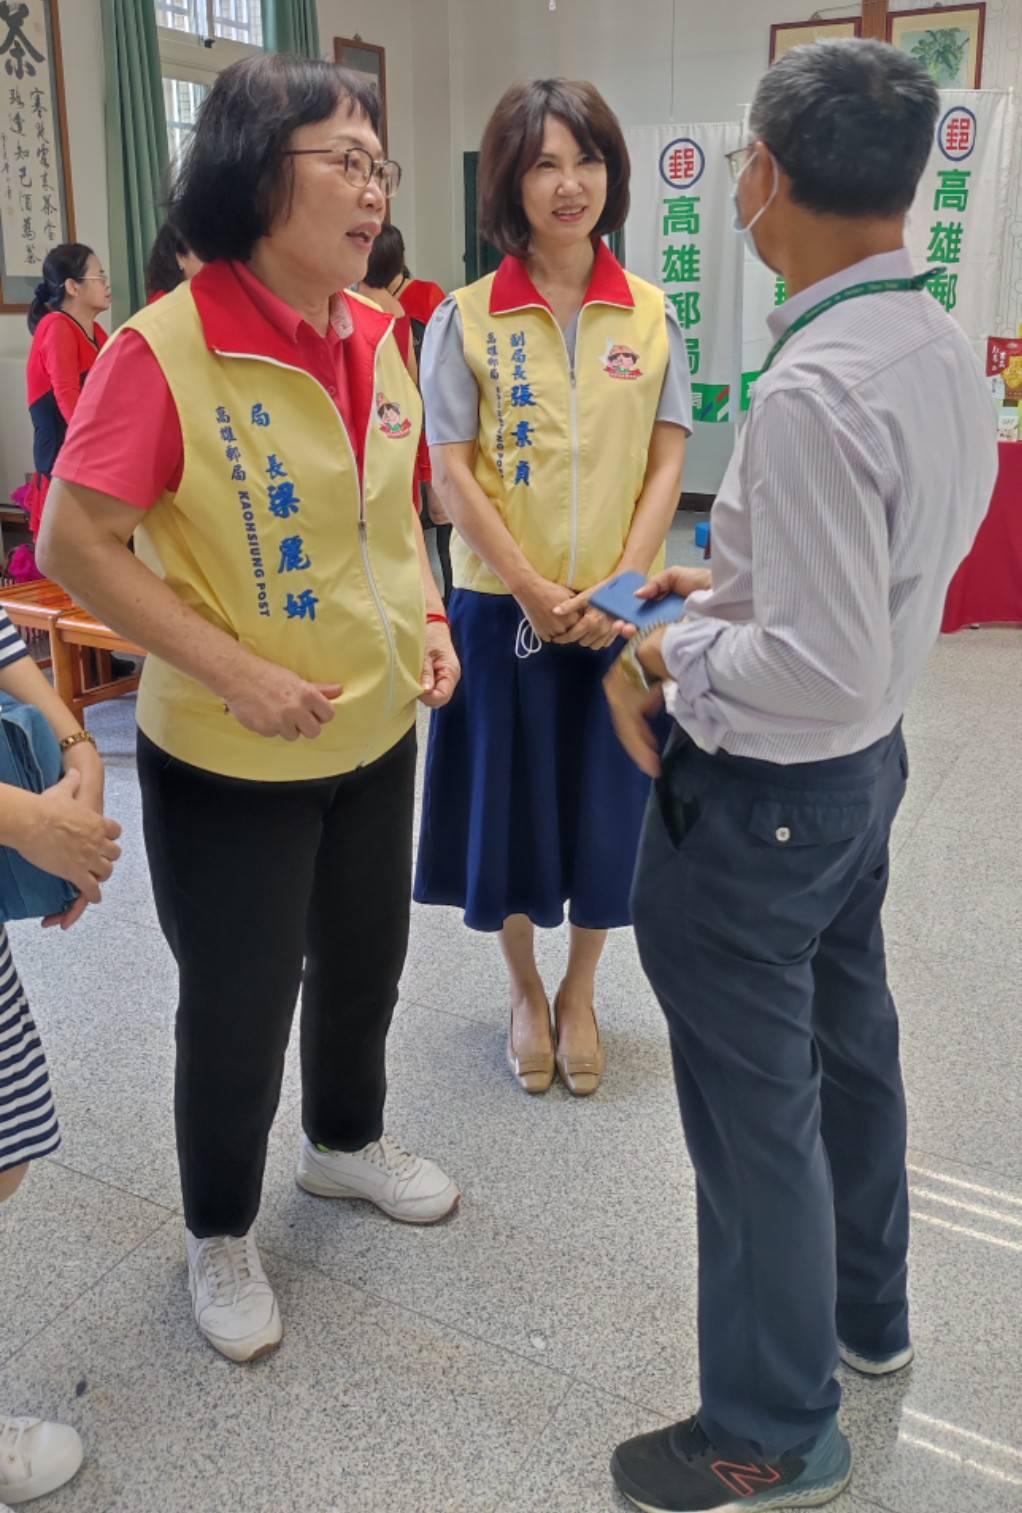 梁麗妍局長與張素貞副局長傾聽路竹區公所社會課同仁訴說長輩需要